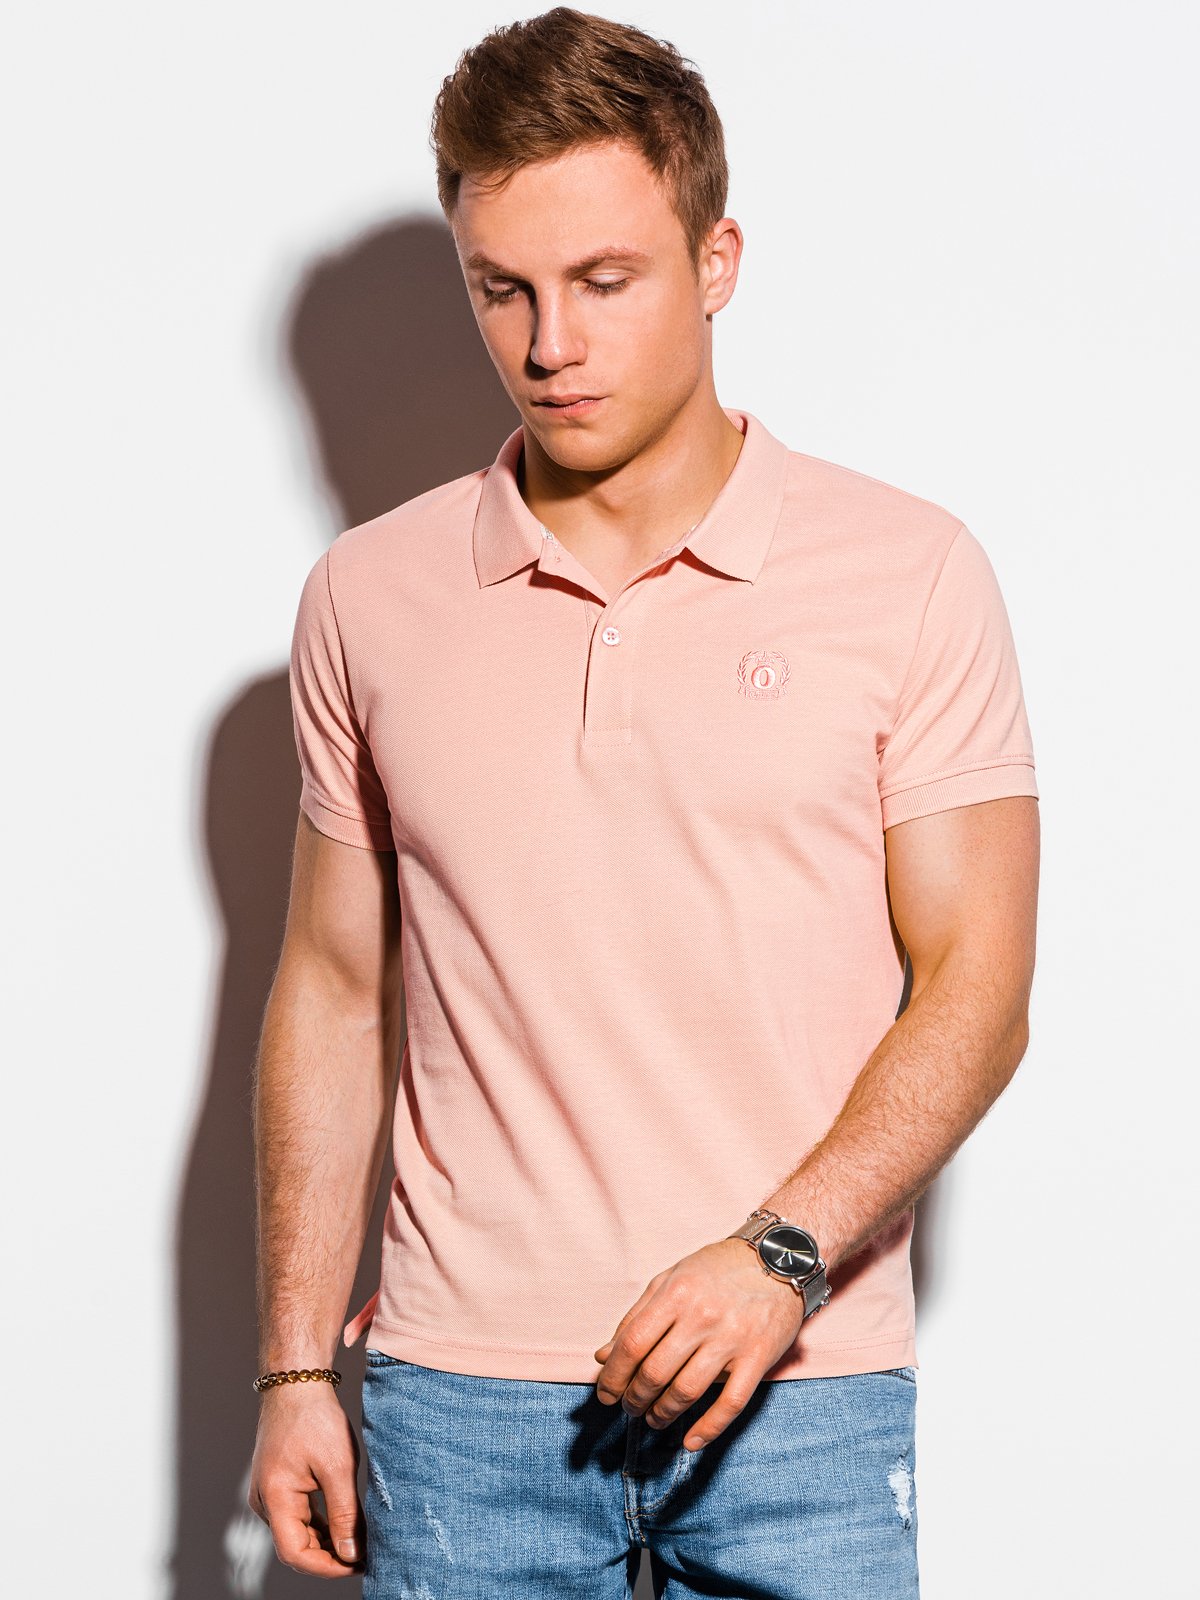 Men's plain polo shirt S1374 – peach ...